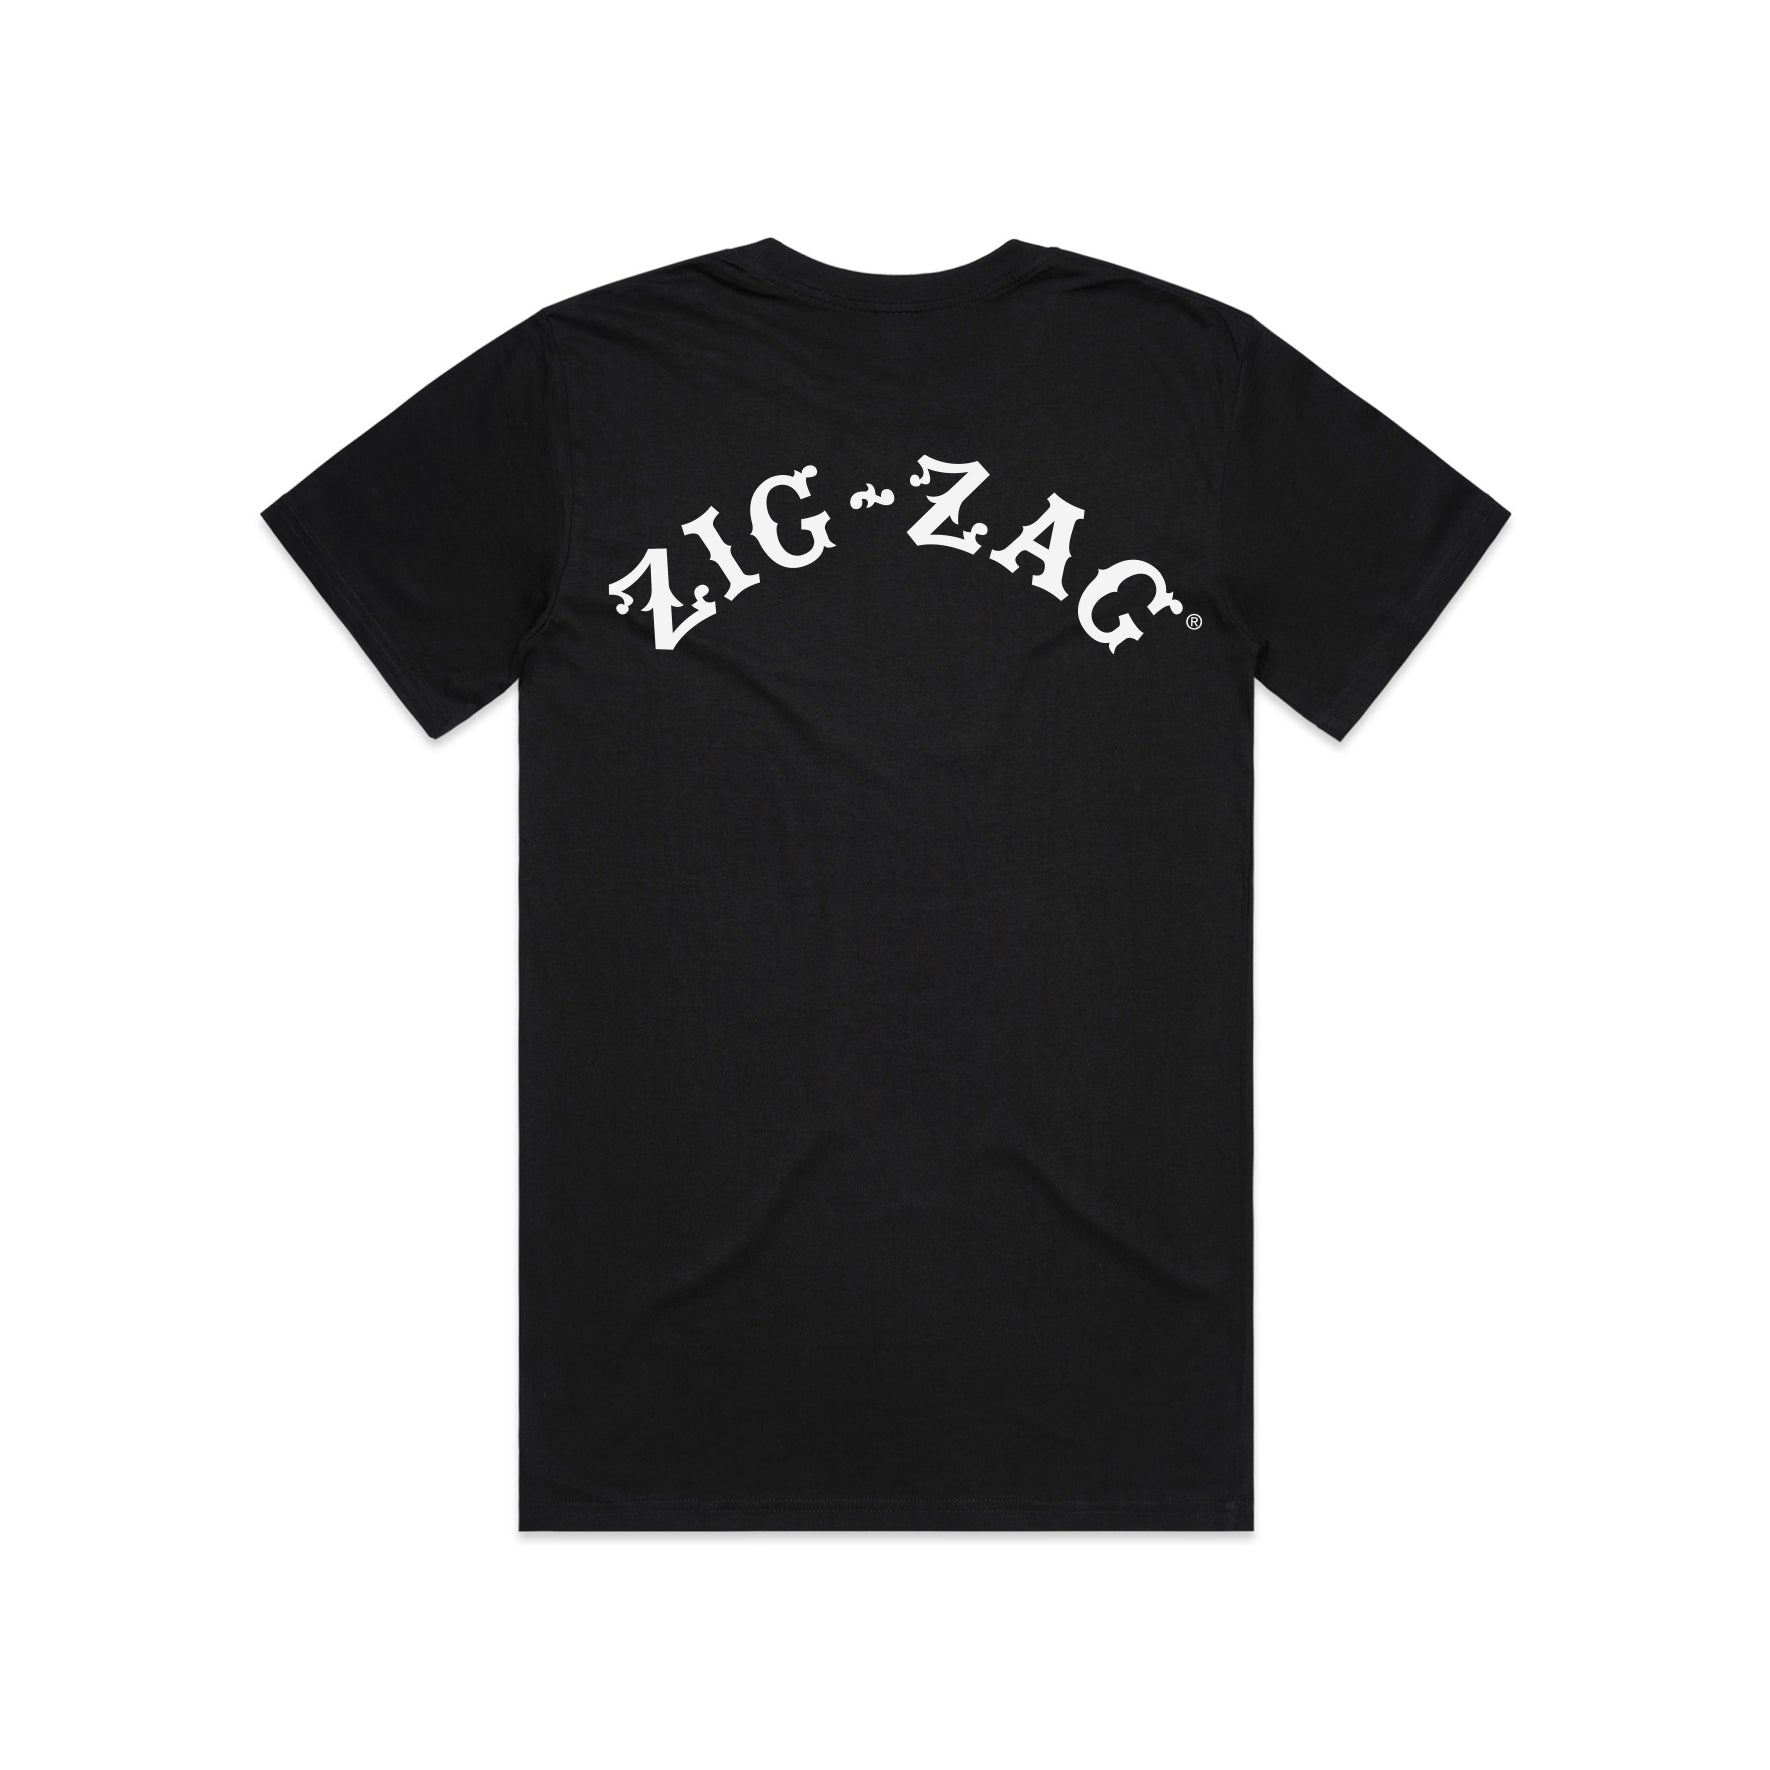 Zig Zag cotton-blend shirt